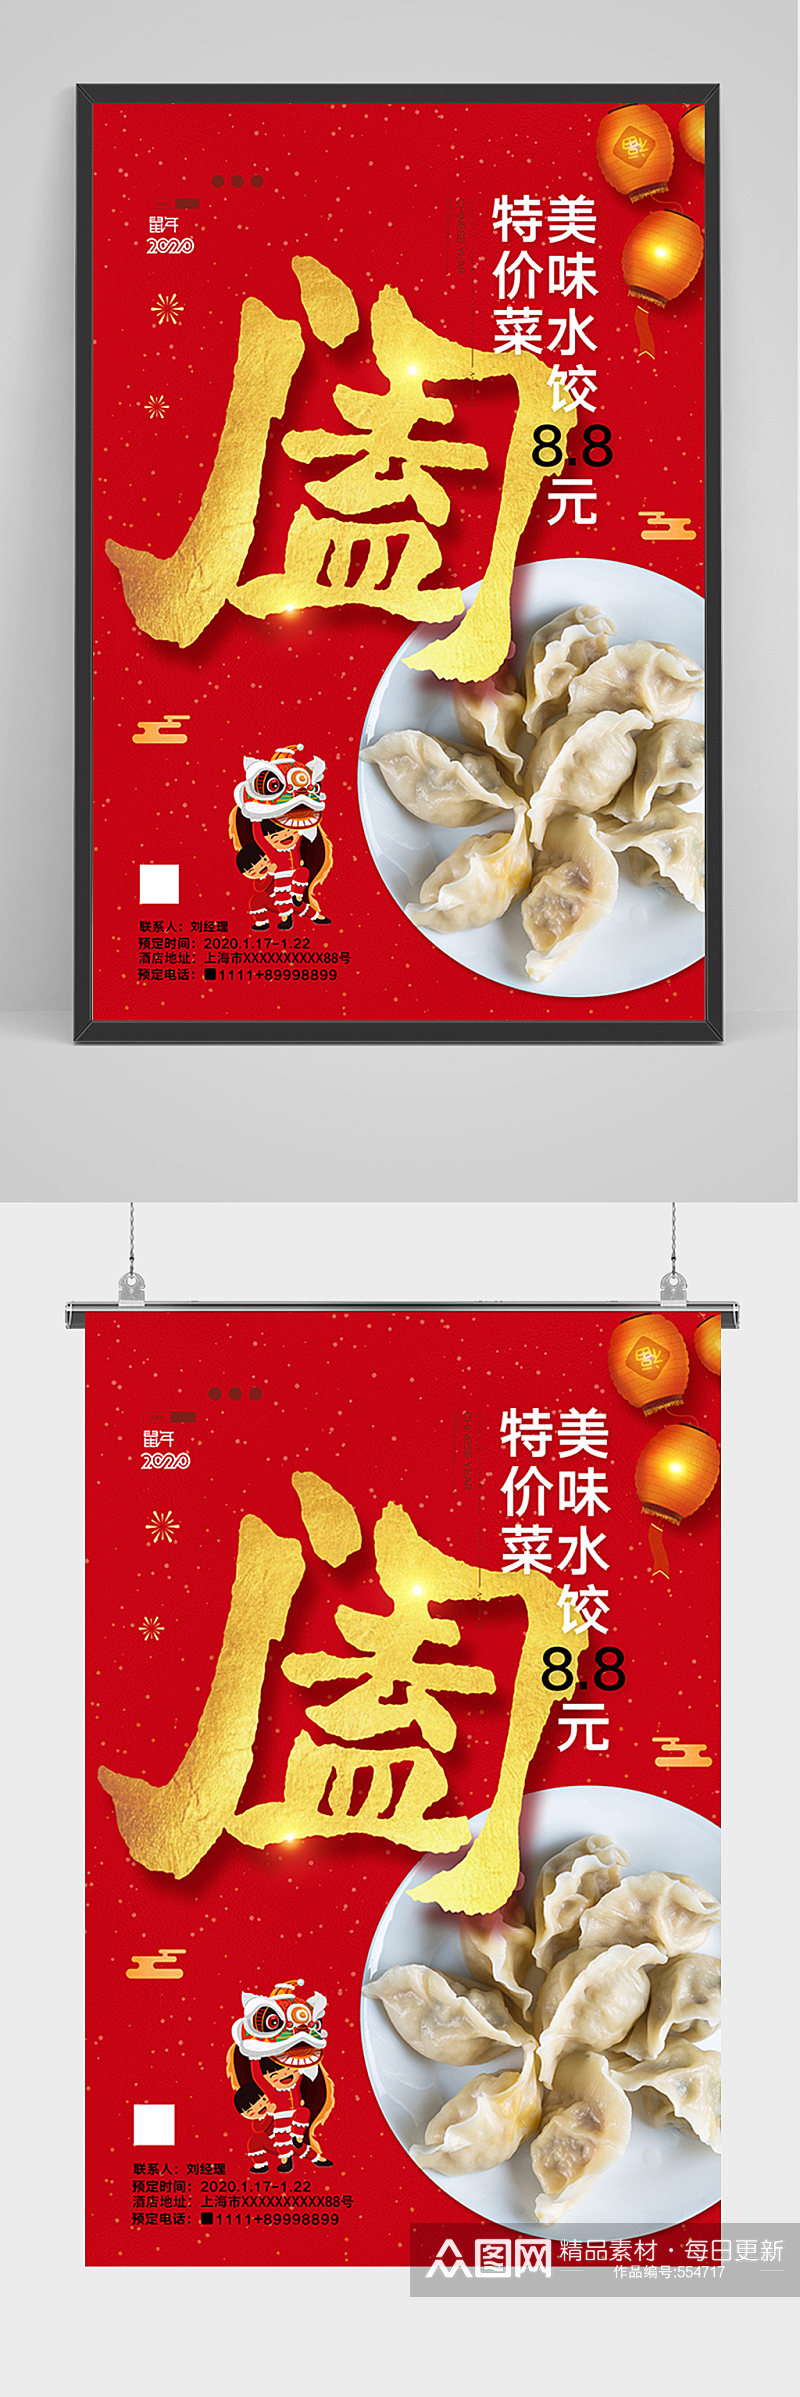 中国风红色水饺海报素材